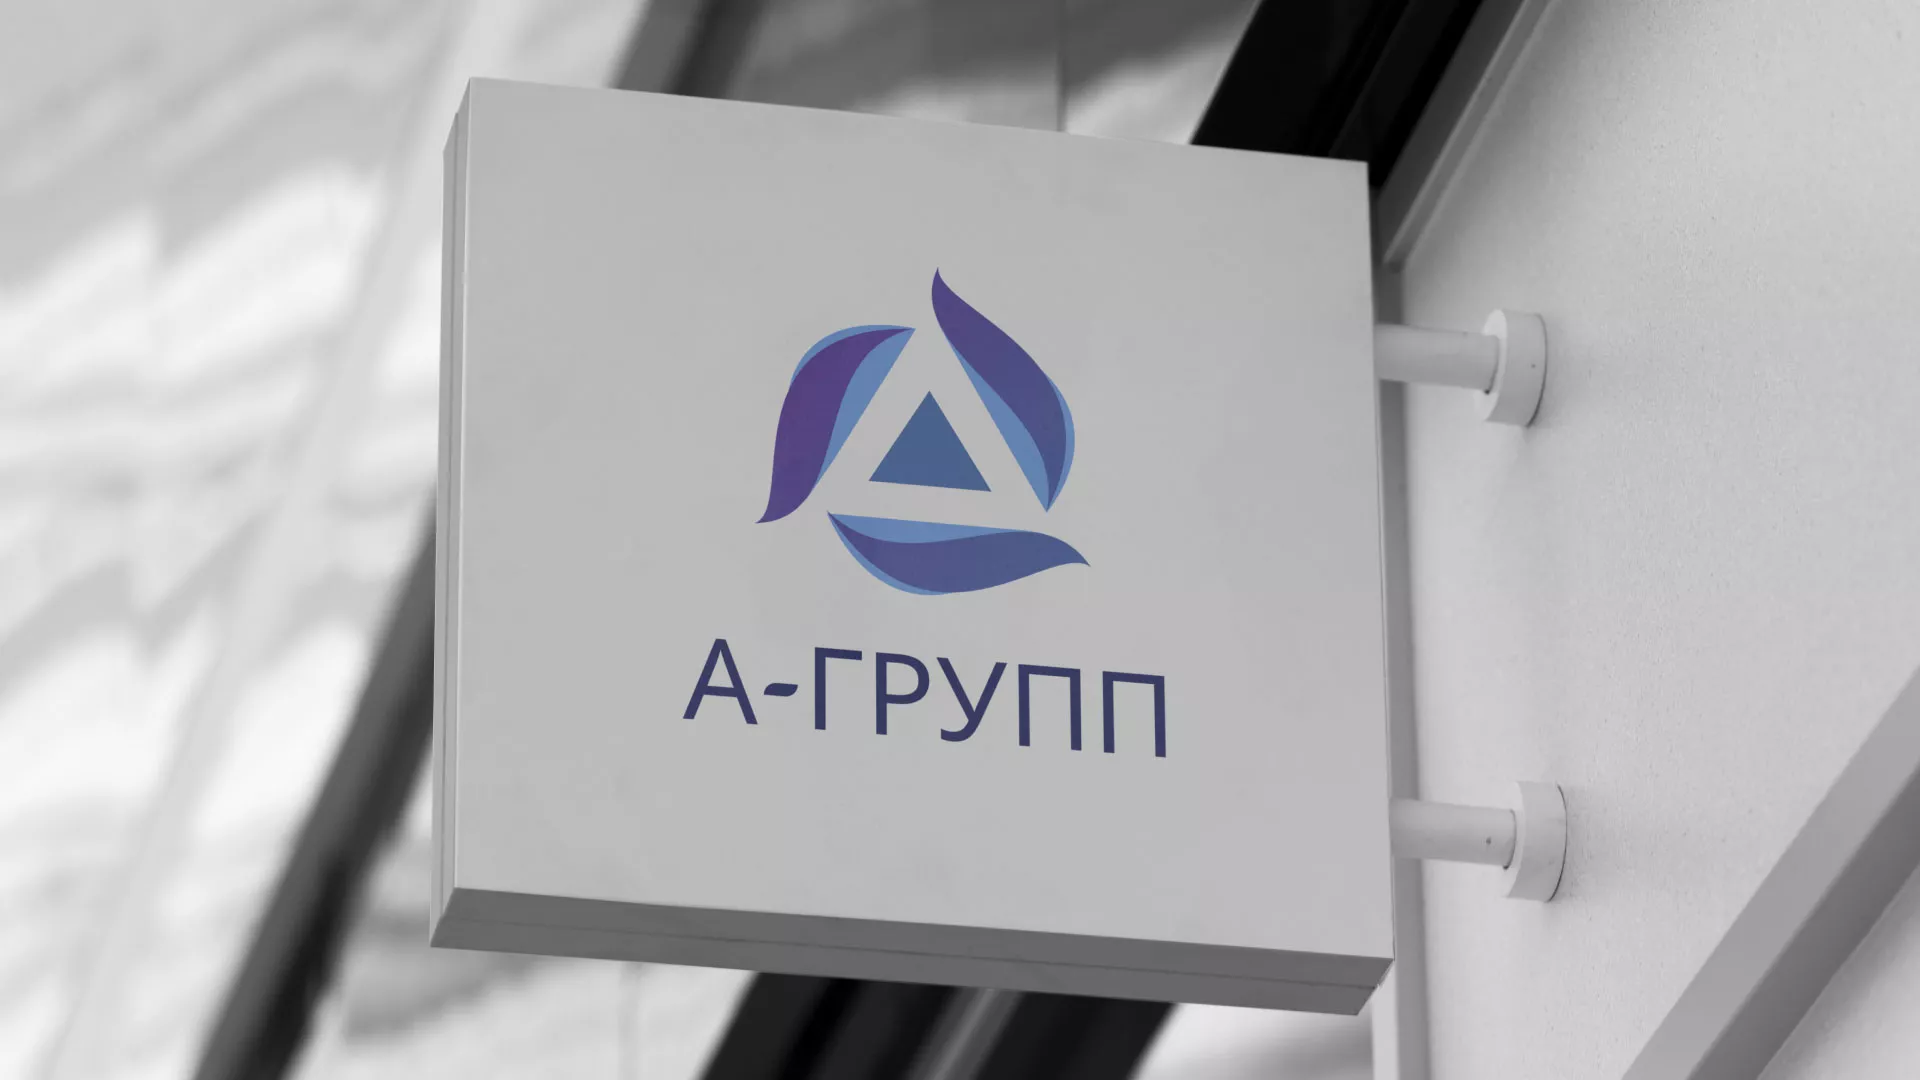 Создание логотипа компании «А-ГРУПП» в Симе